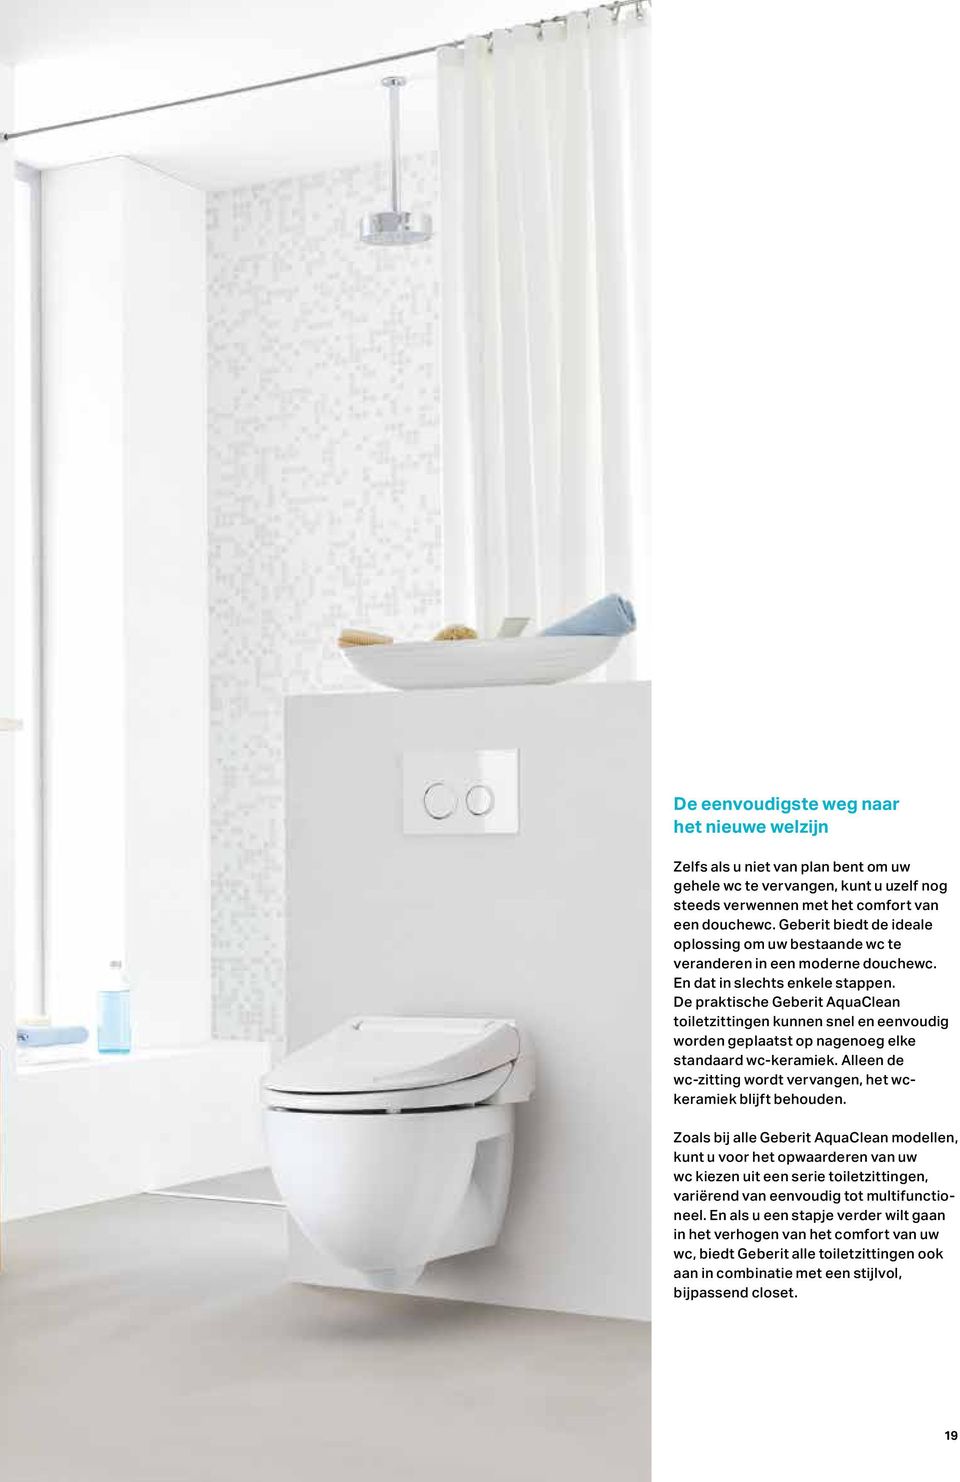 De praktische Geberit AquaClean toiletzitting en kunnen snel en eenvoudig worden geplaatst op nagenoeg elke standaard wc-keramiek. Alleen de wc-zitting wordt vervangen, het wckeramiek blijft behouden.